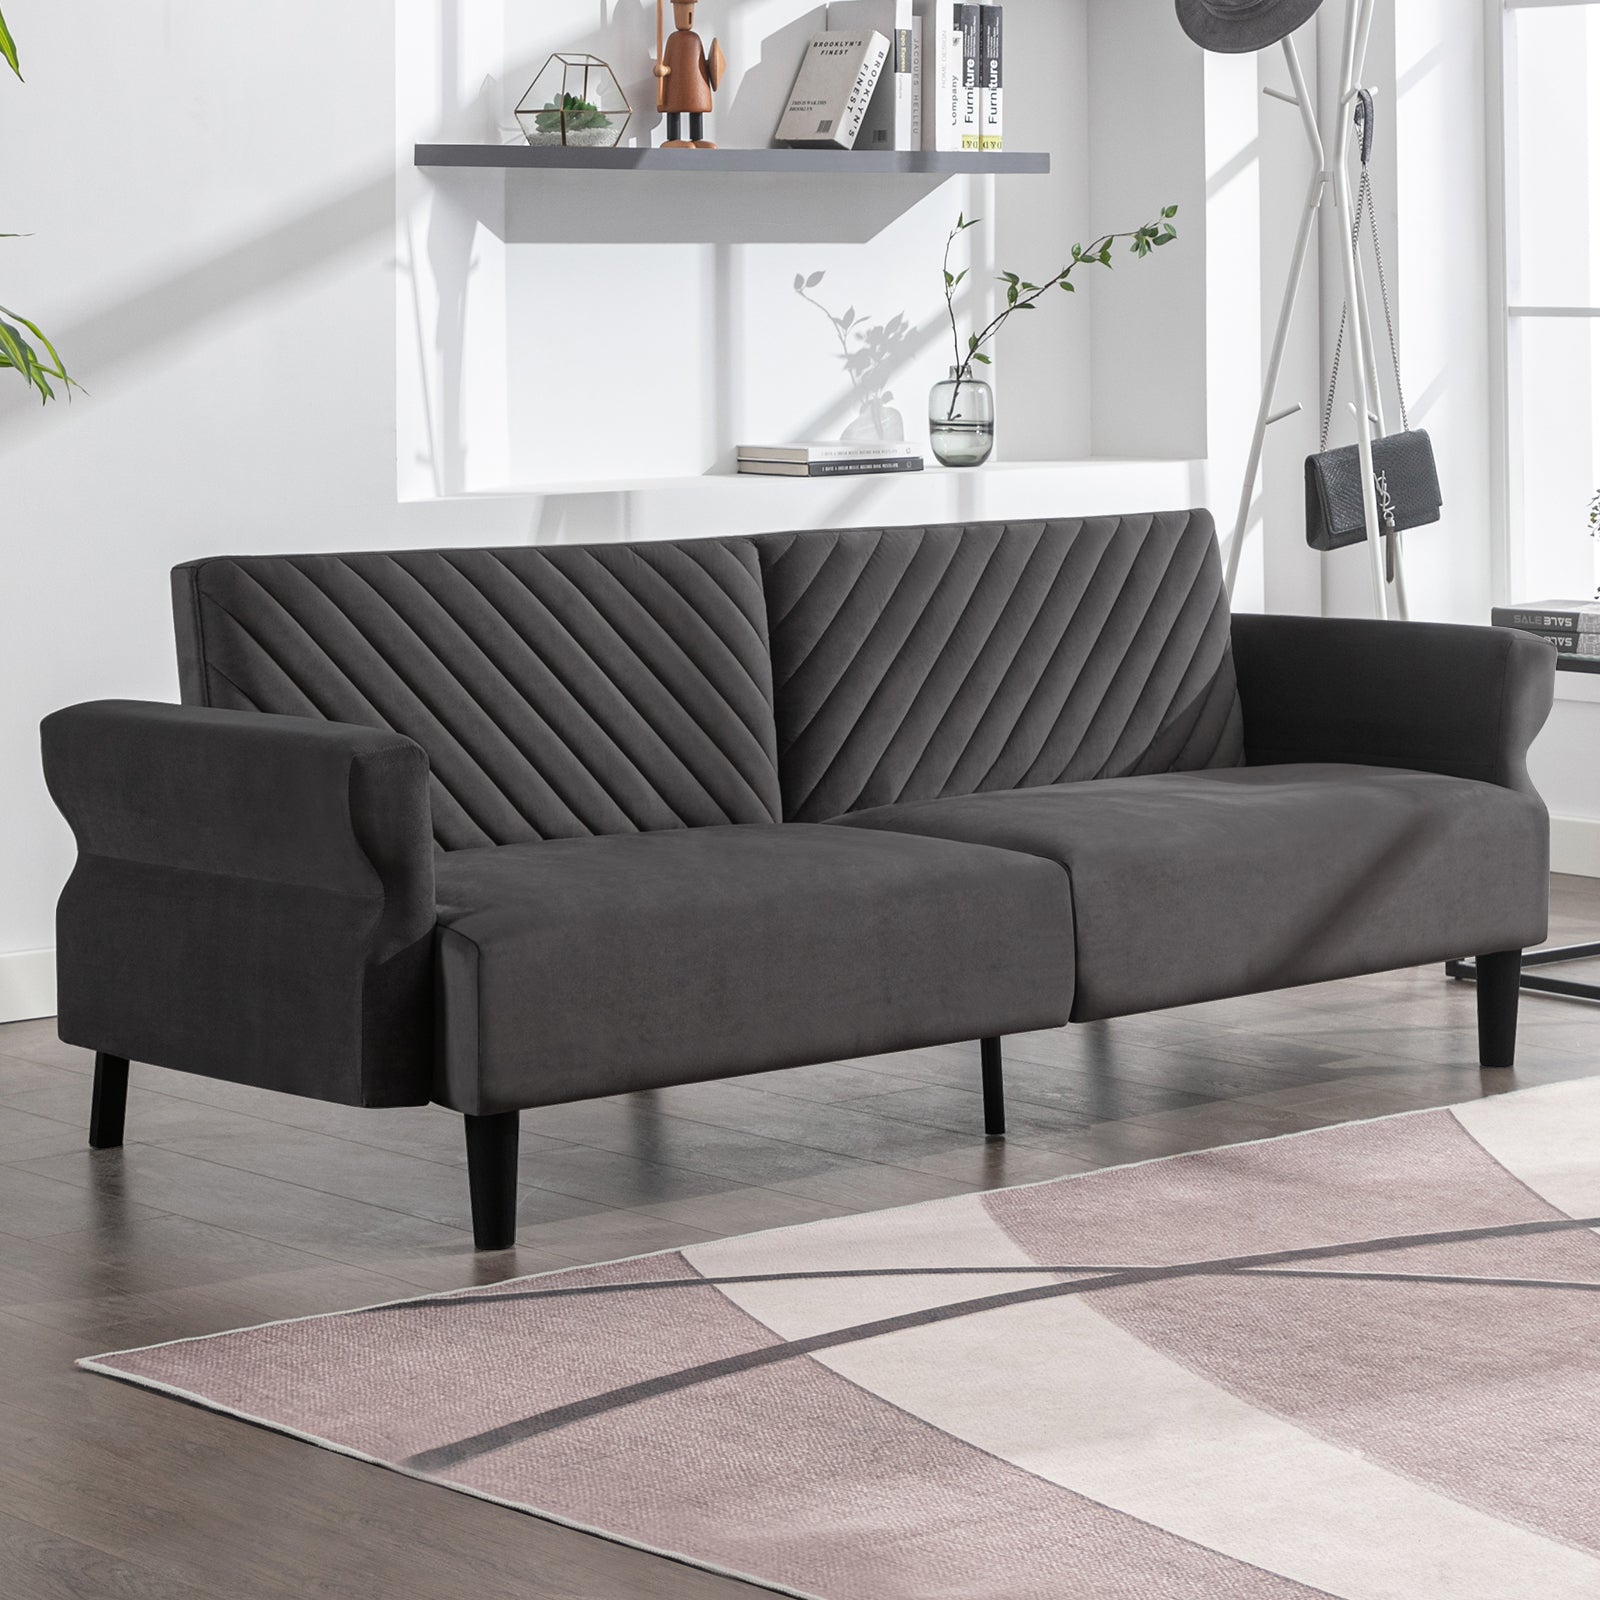 Mjkone Mid-Century Convertible Futon Sofa Bed Sleeper Loveseat